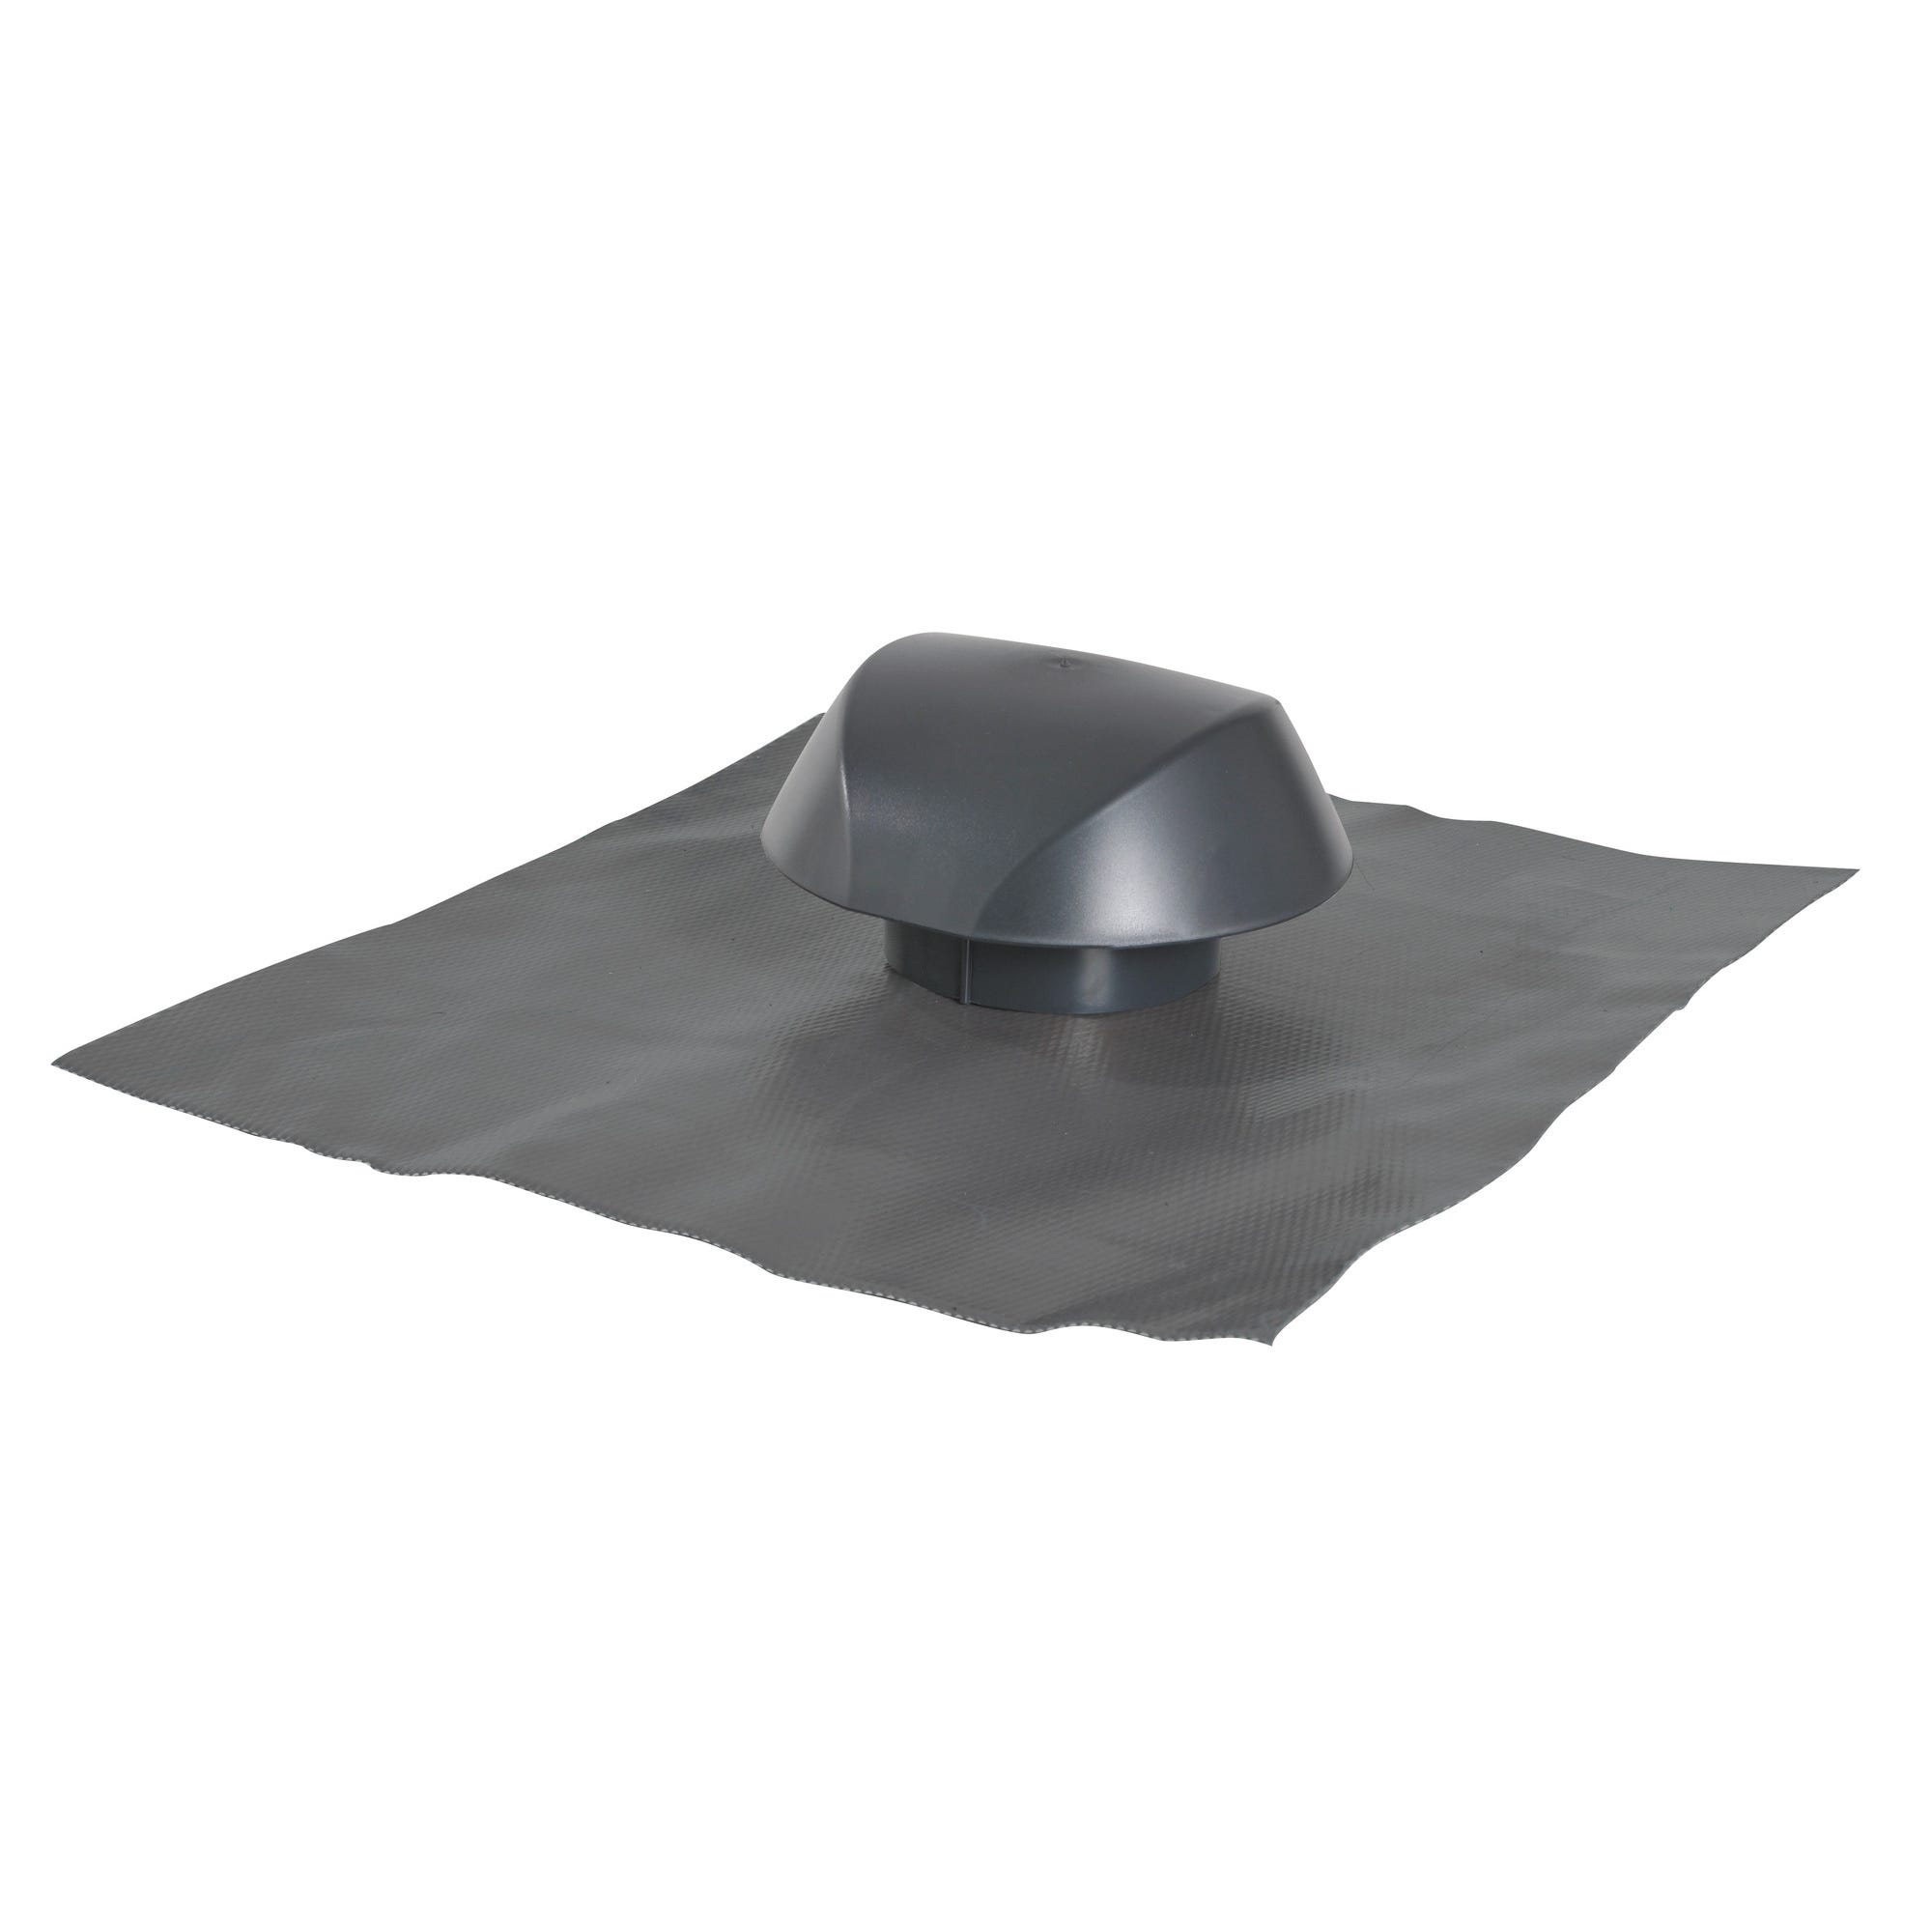 Chapeau de ventilation avec collerette d'étanchéité anthracite Diam.100 mm Atemax - NICOLL 1